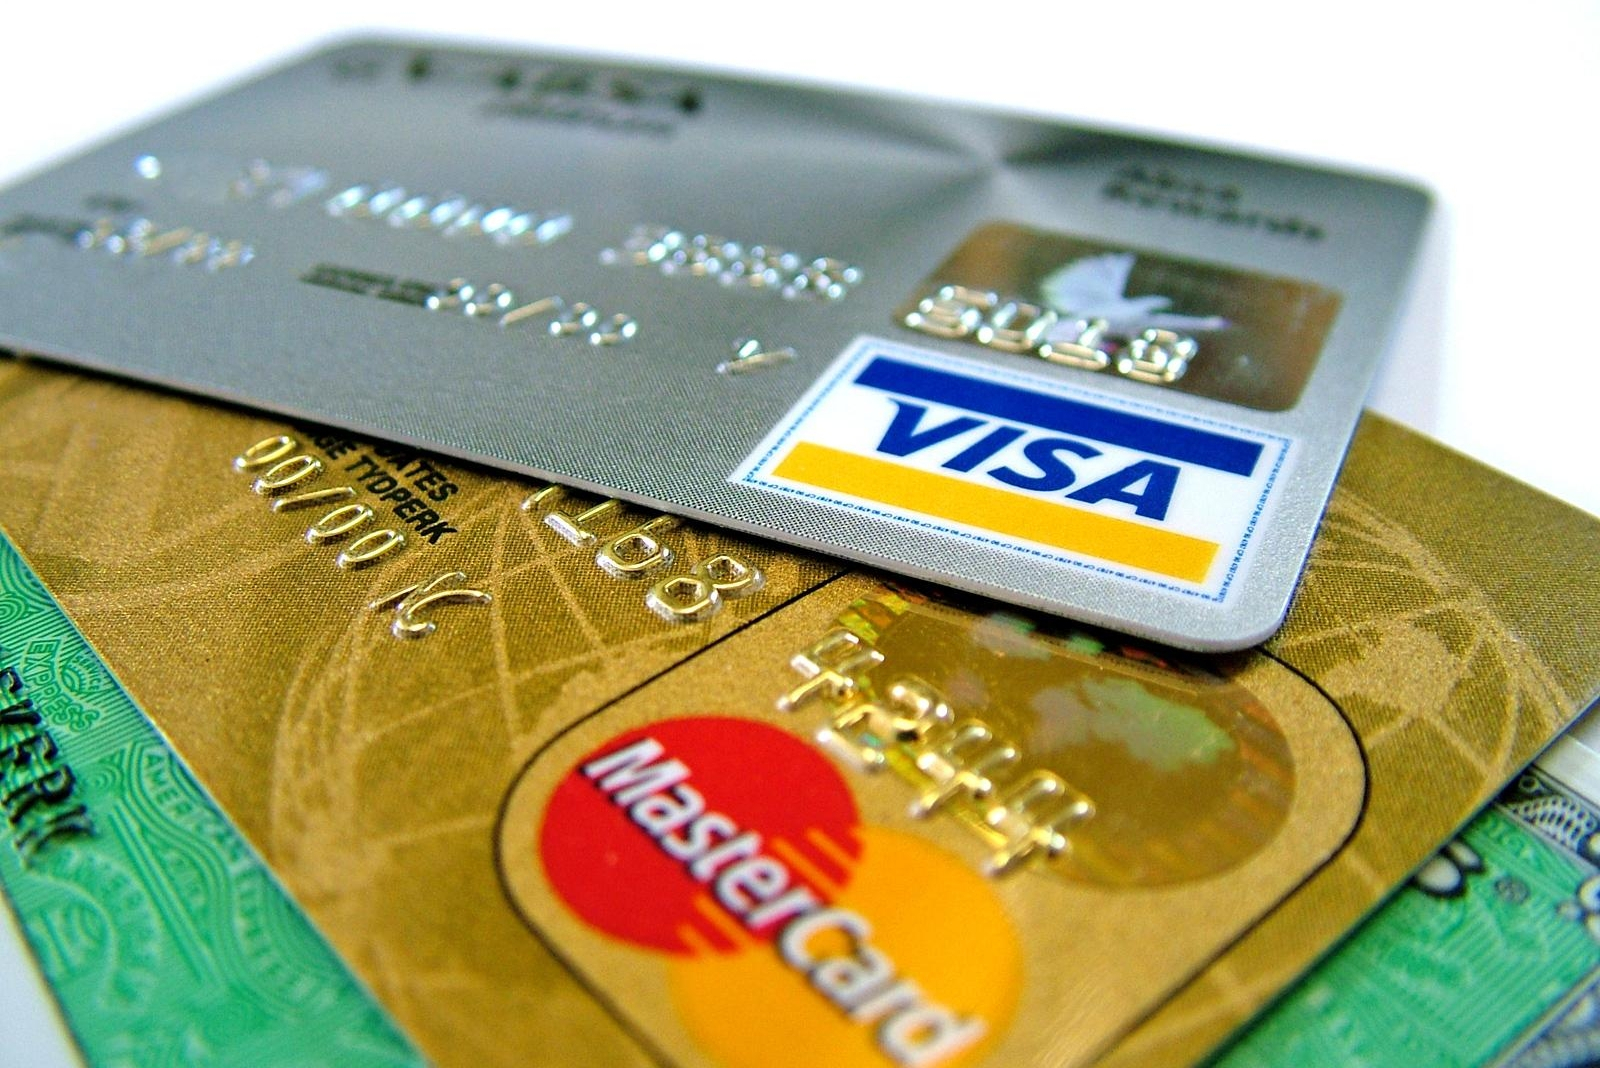 Mastercard и Visa приостанавливают деятельность в России